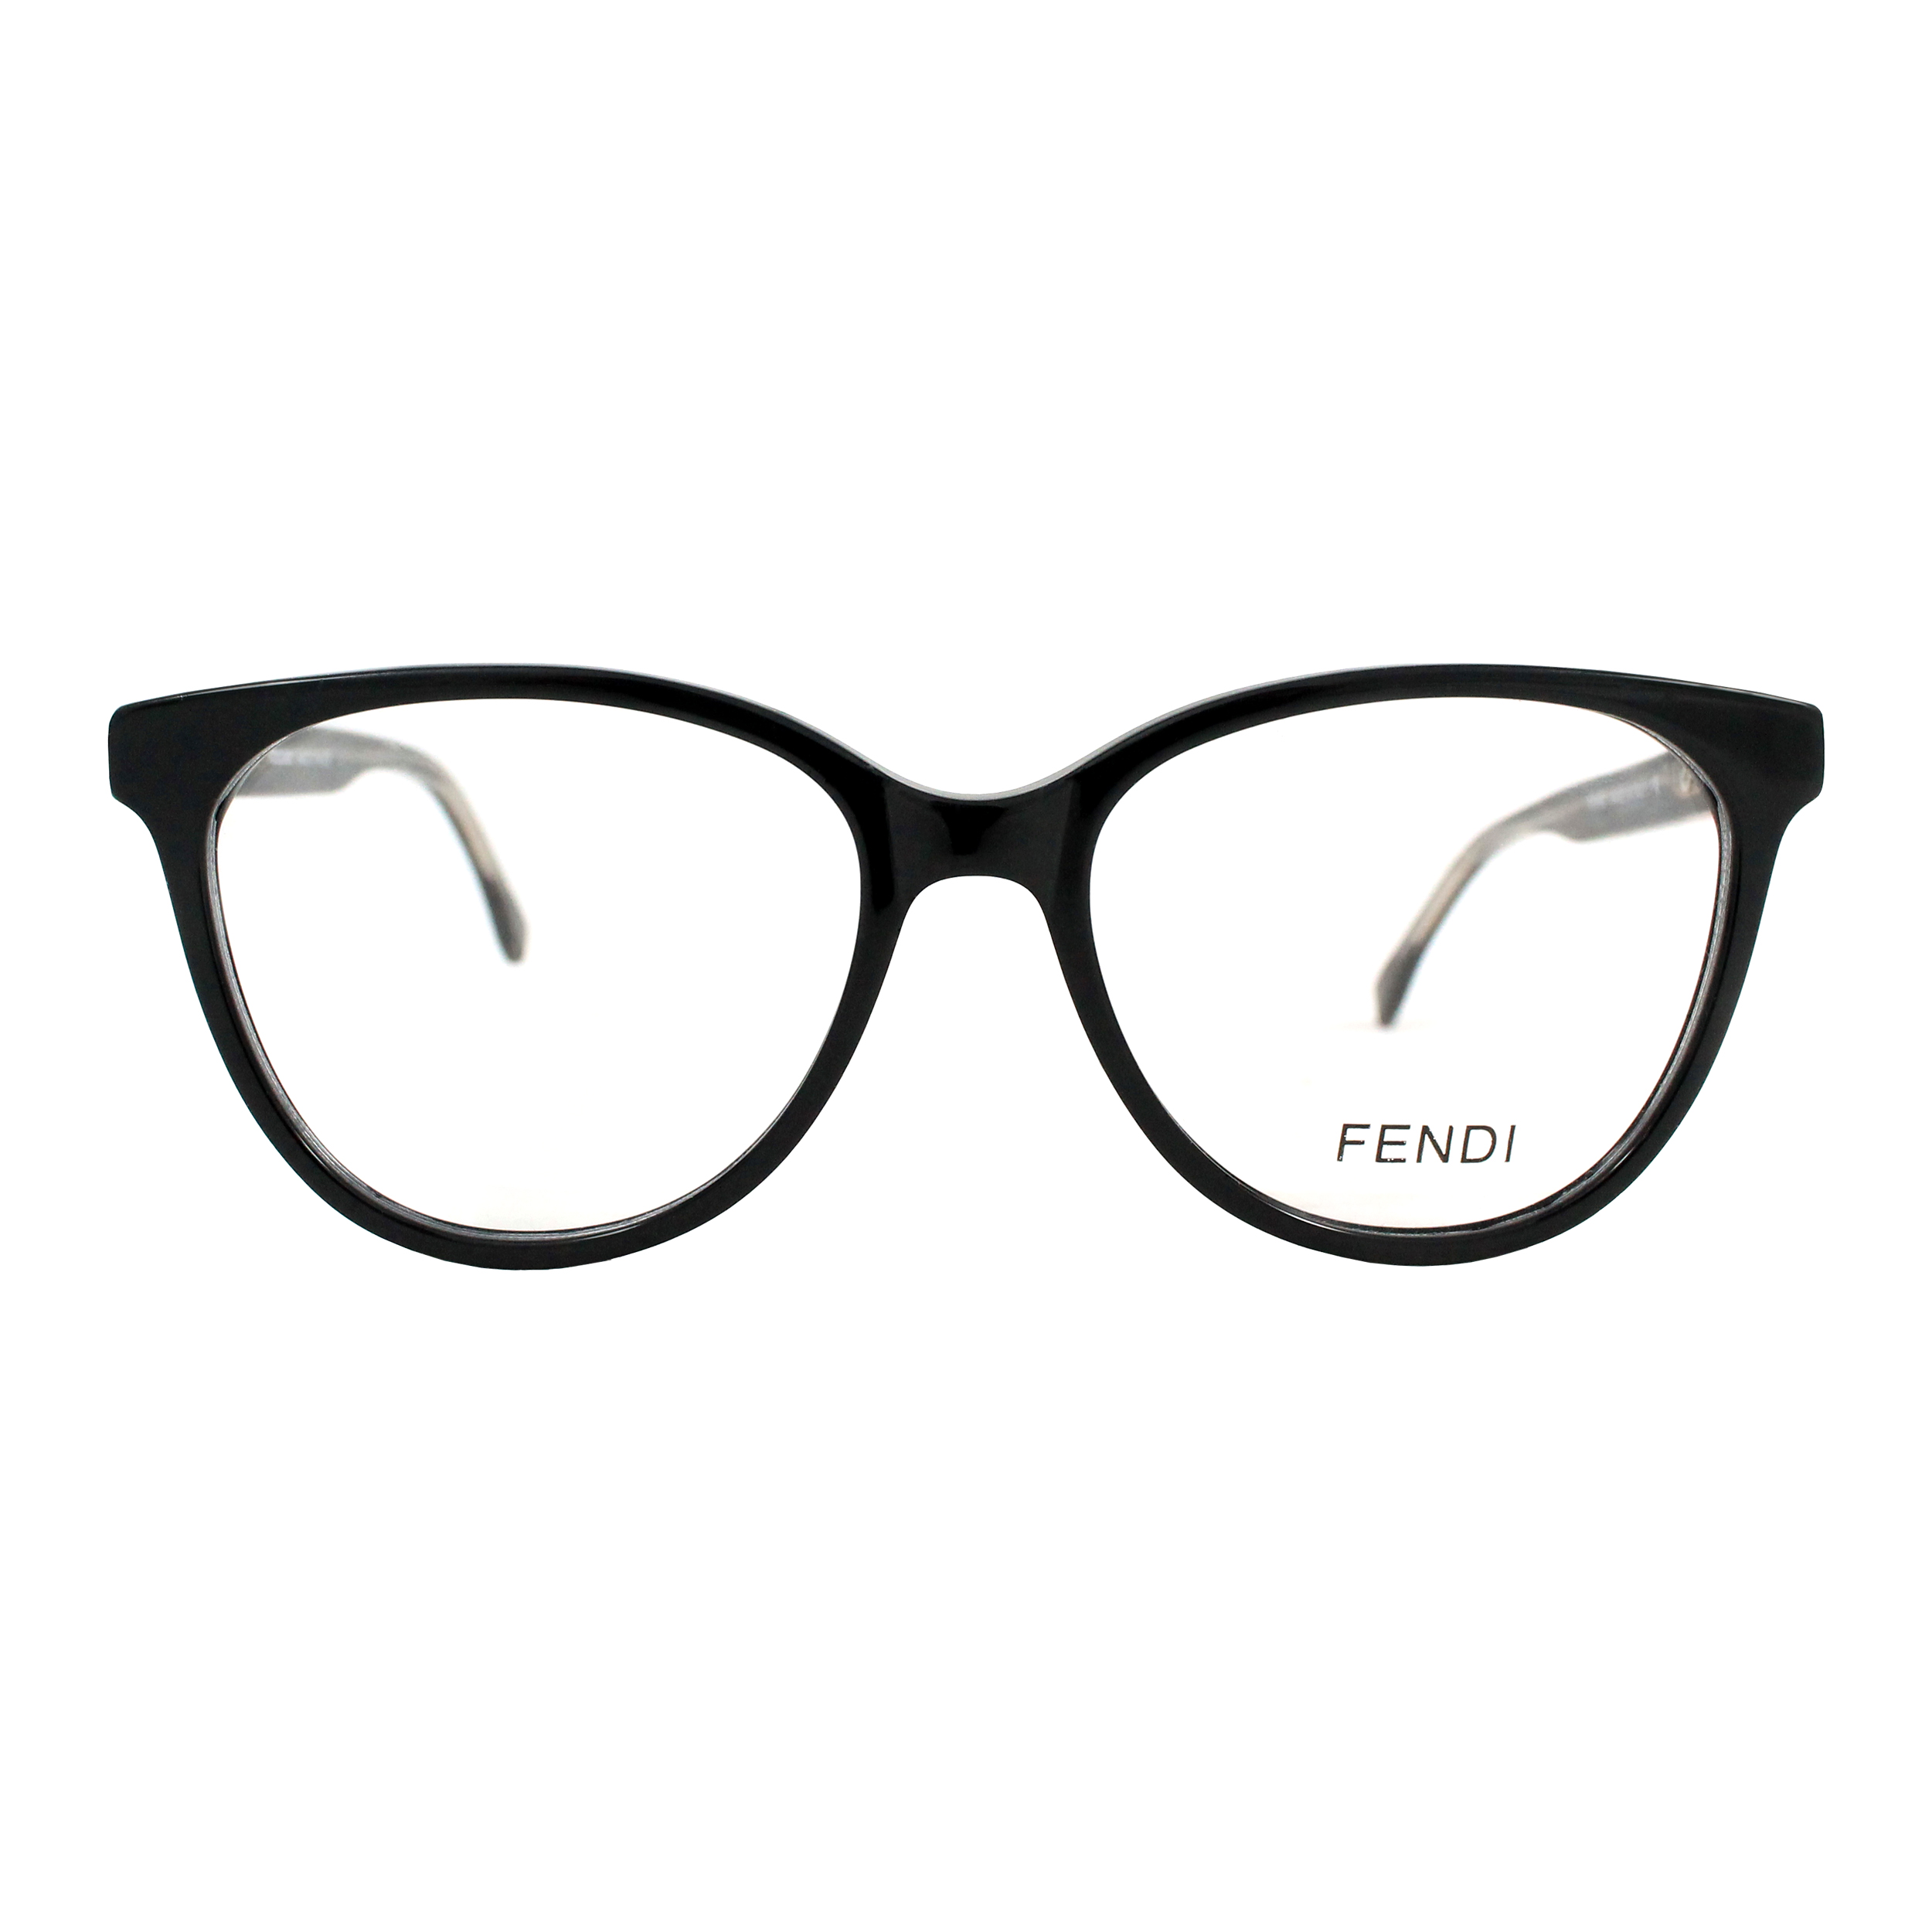 فریم عینک طبی مدل L_033601